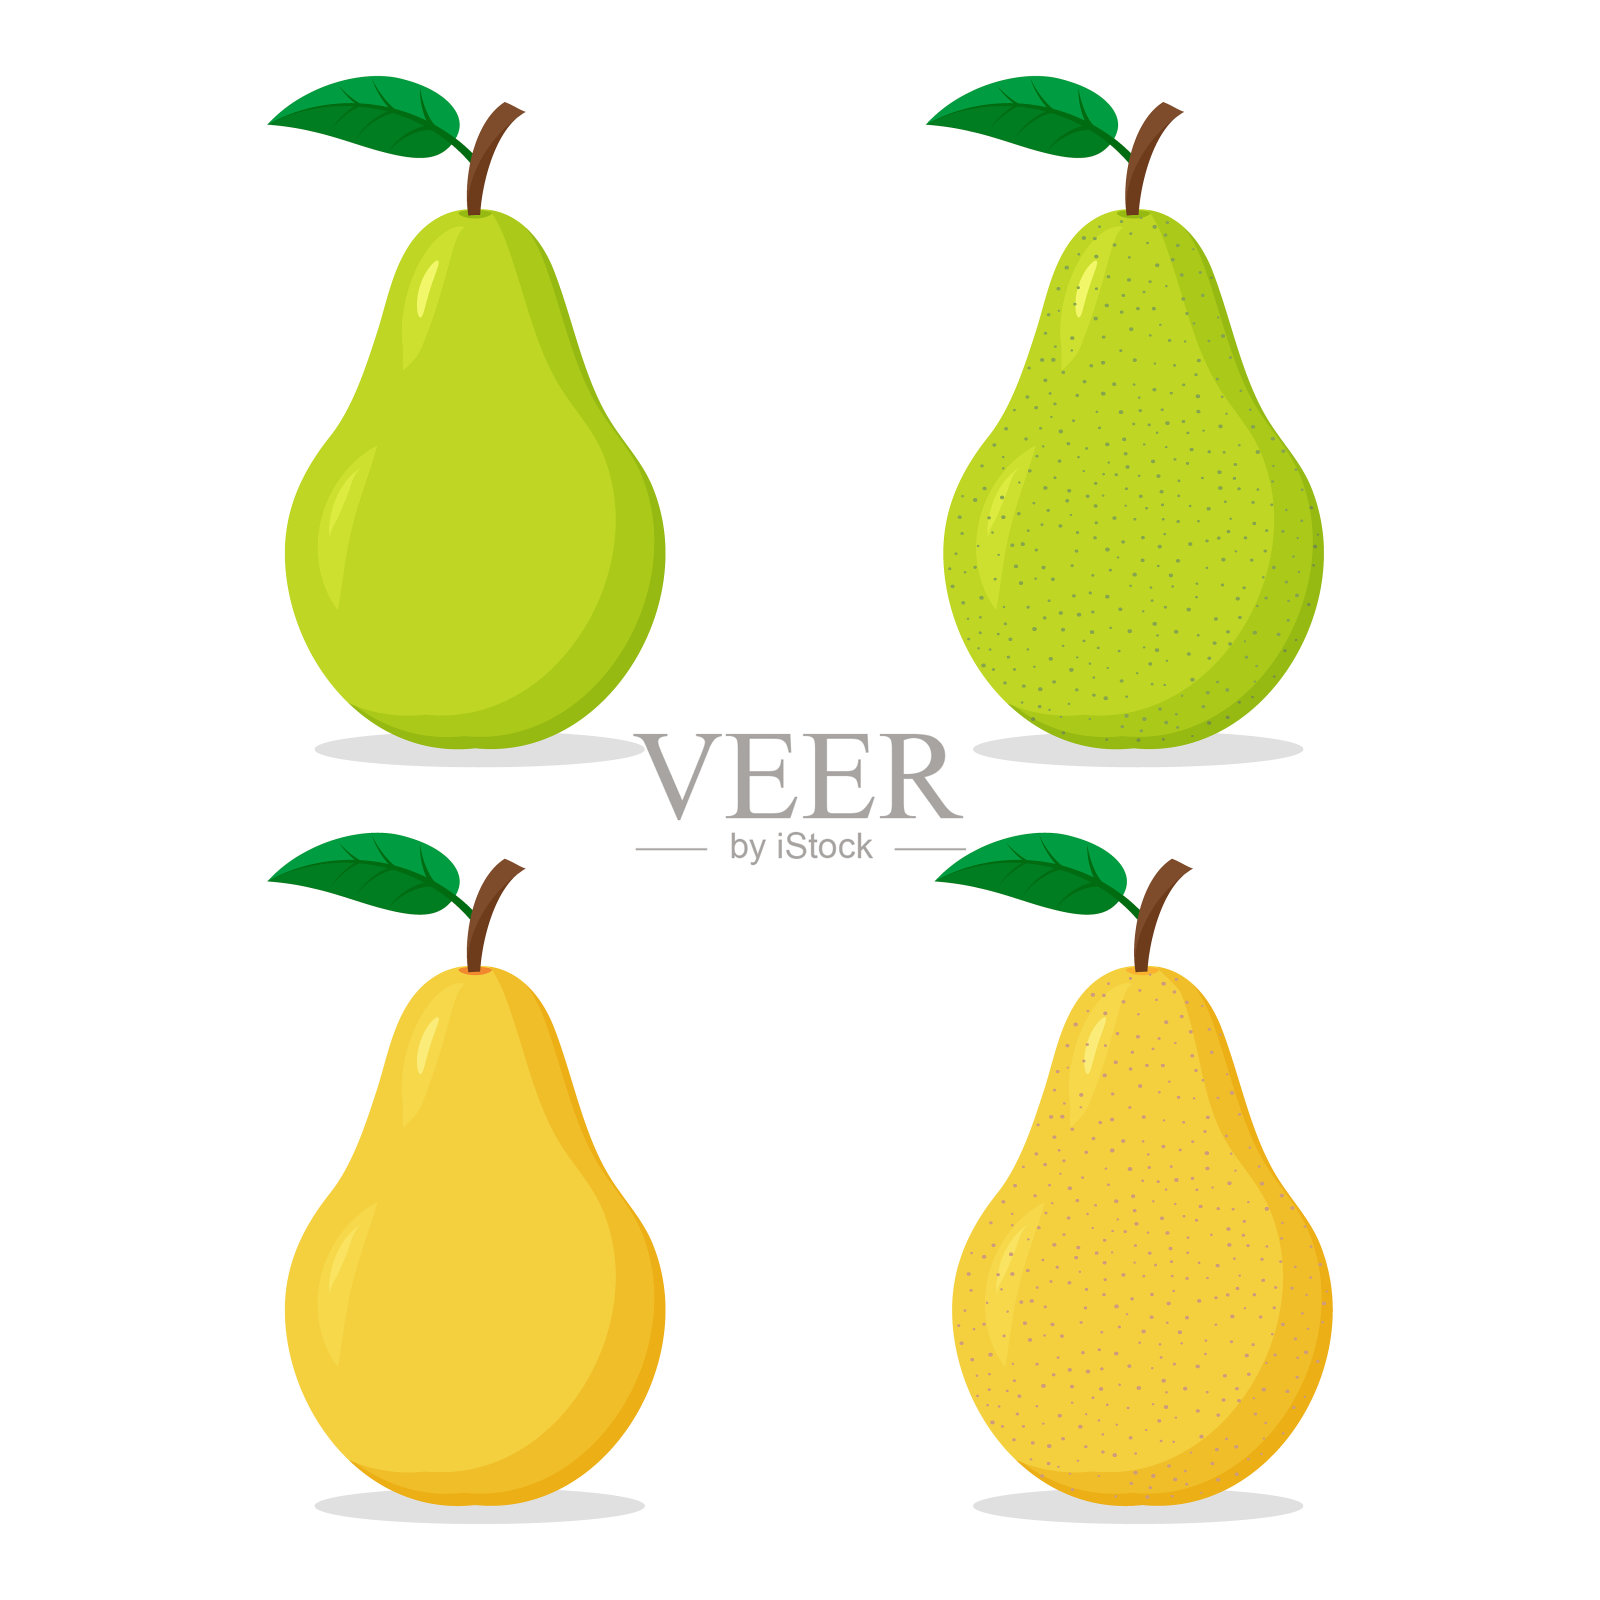 一组绿色和黄色的梨的彩色图标设计元素图片